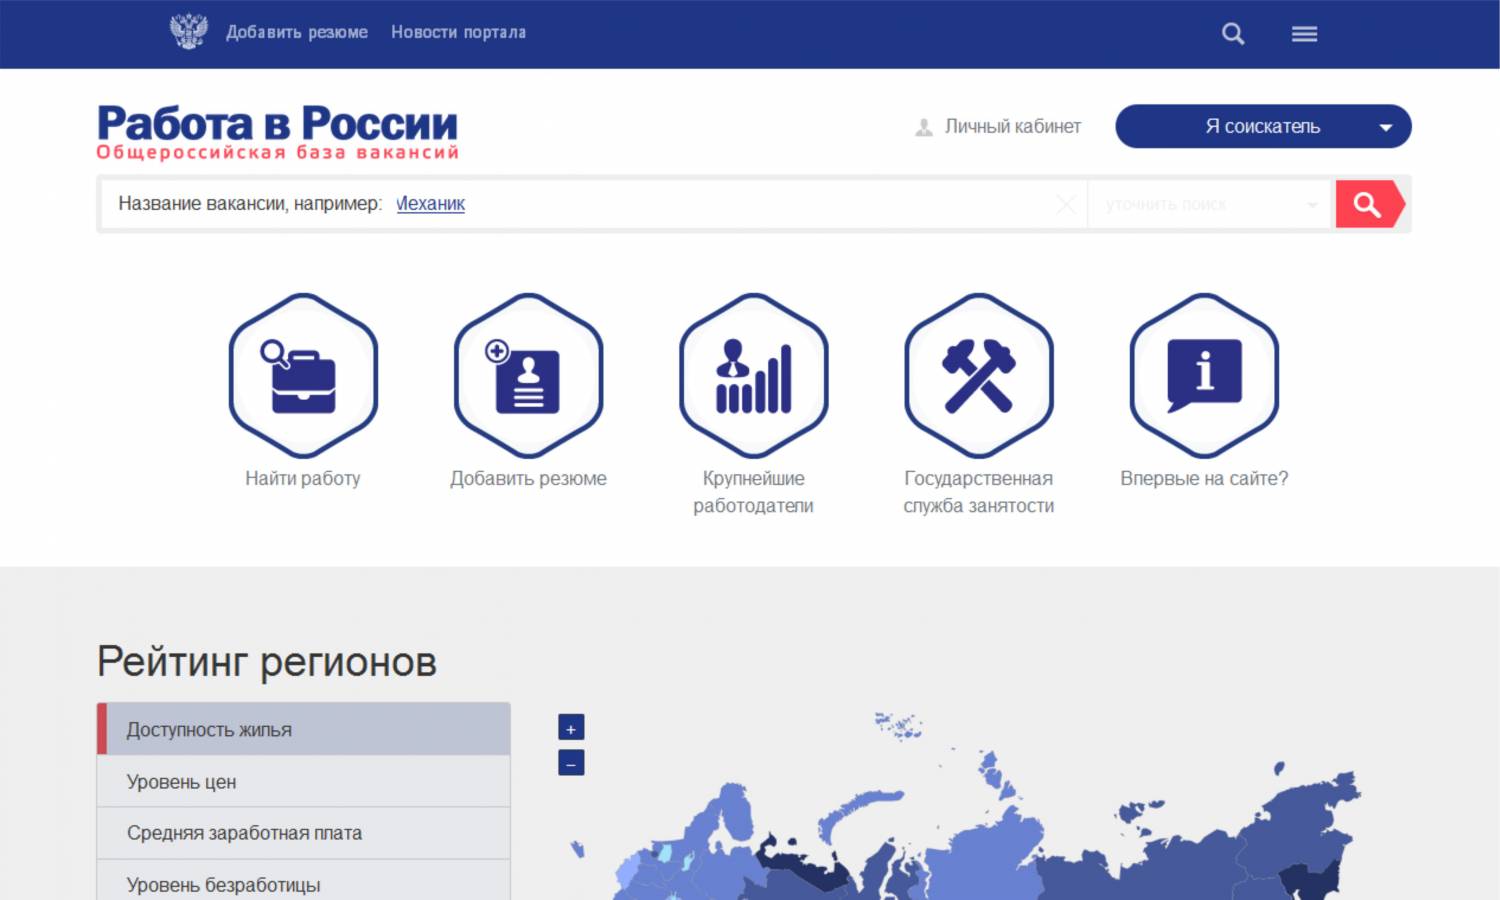 Портал «Работа в России» в помощь работодателям и соискателям